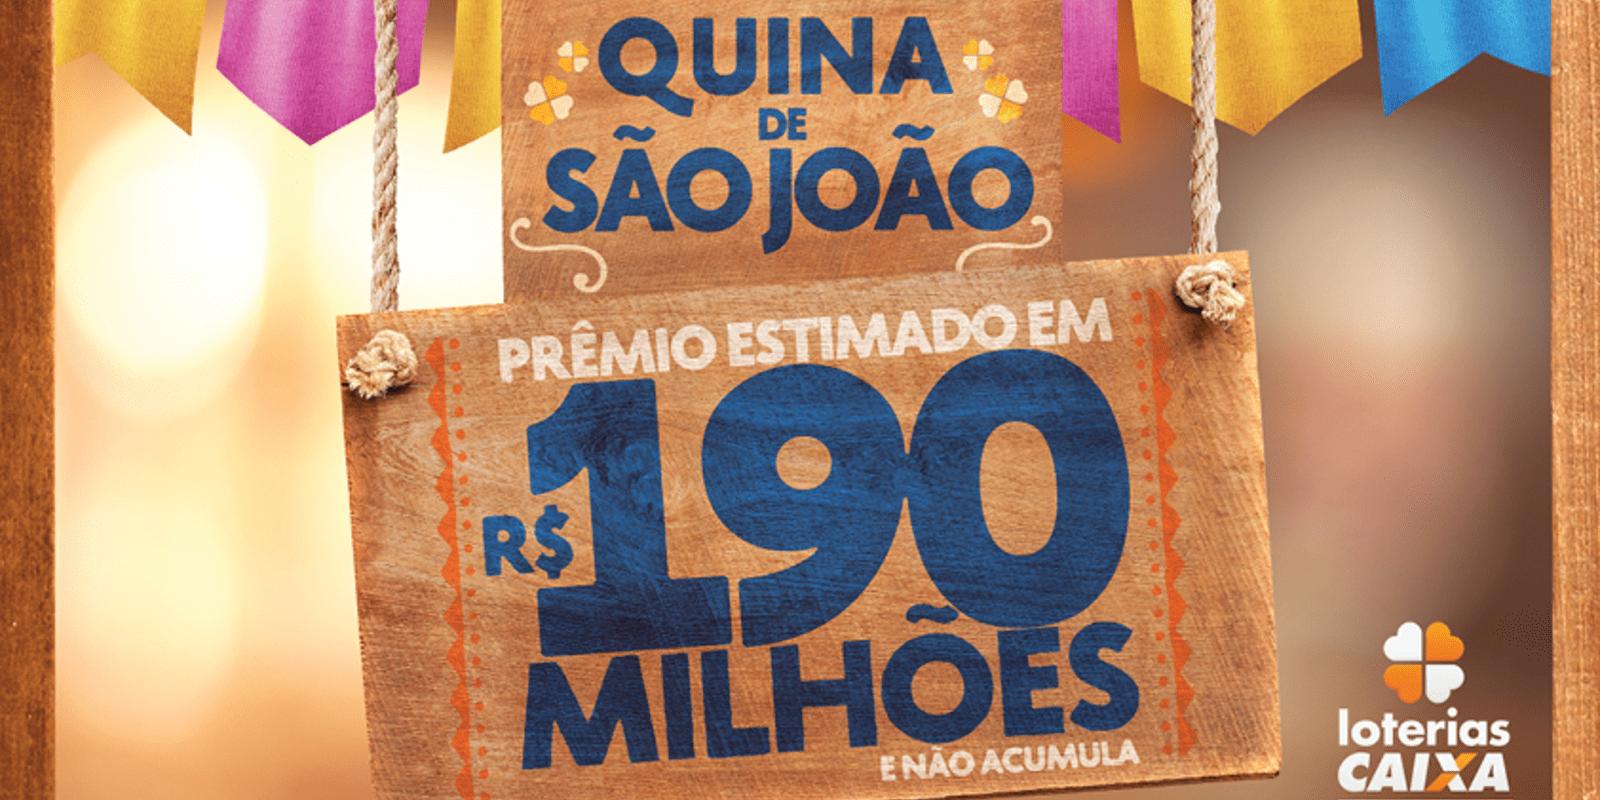 Featured image for “Quina de São João”